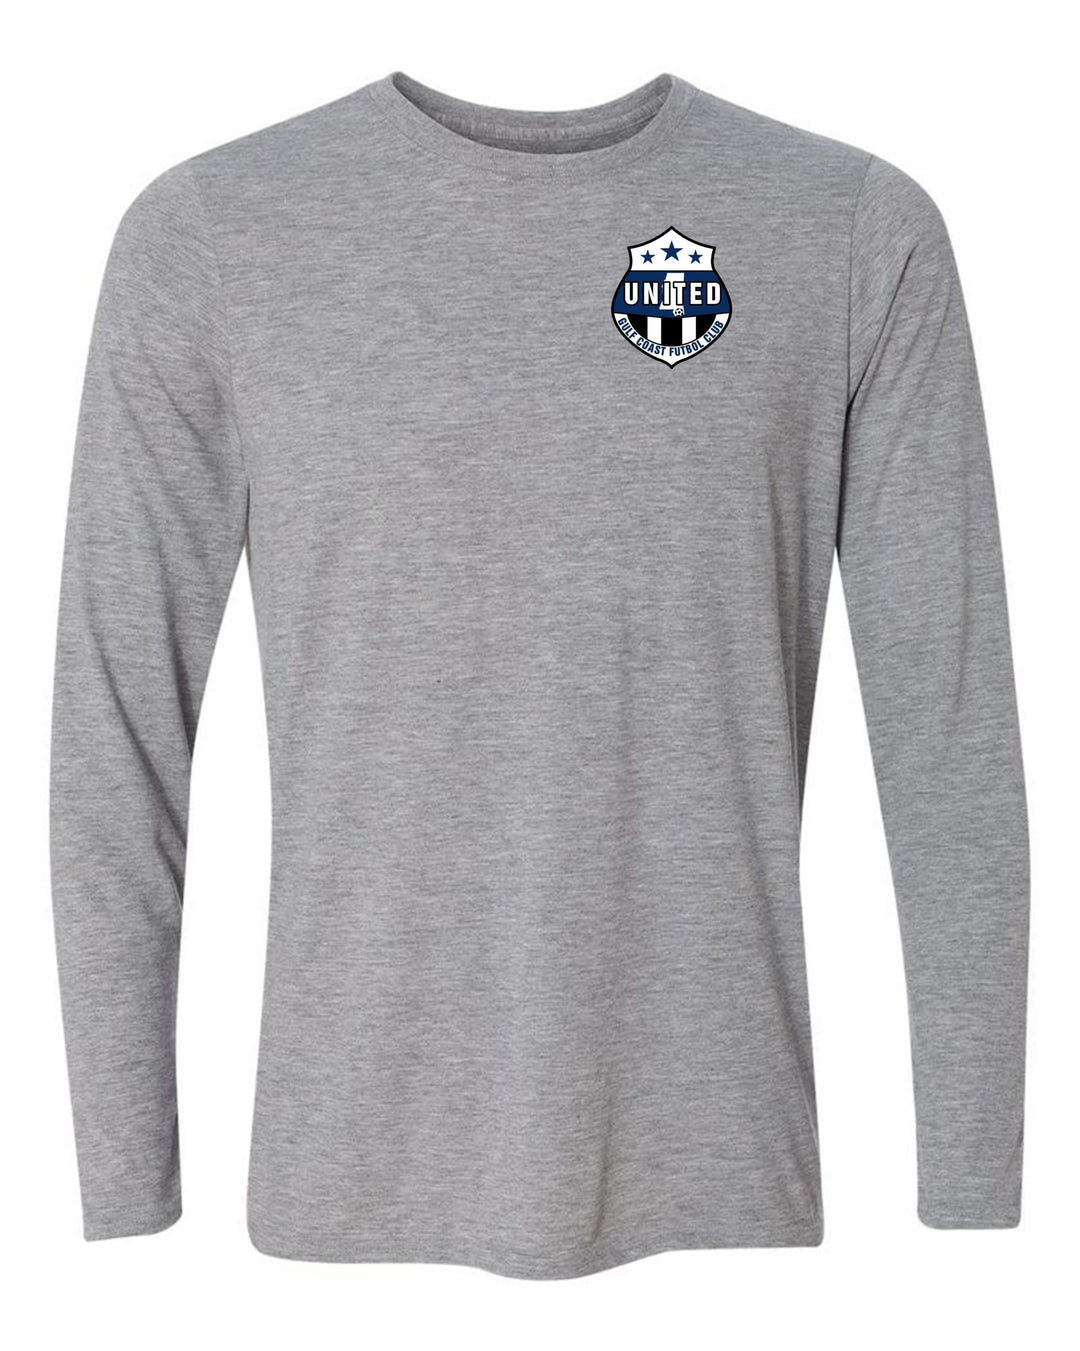 Gulf Coast United LS T-shirt - Royal or Sport Grey Gulf Coast United Spiritwear SPORT GREY YOUTH SMALL - Third Coast Soccer